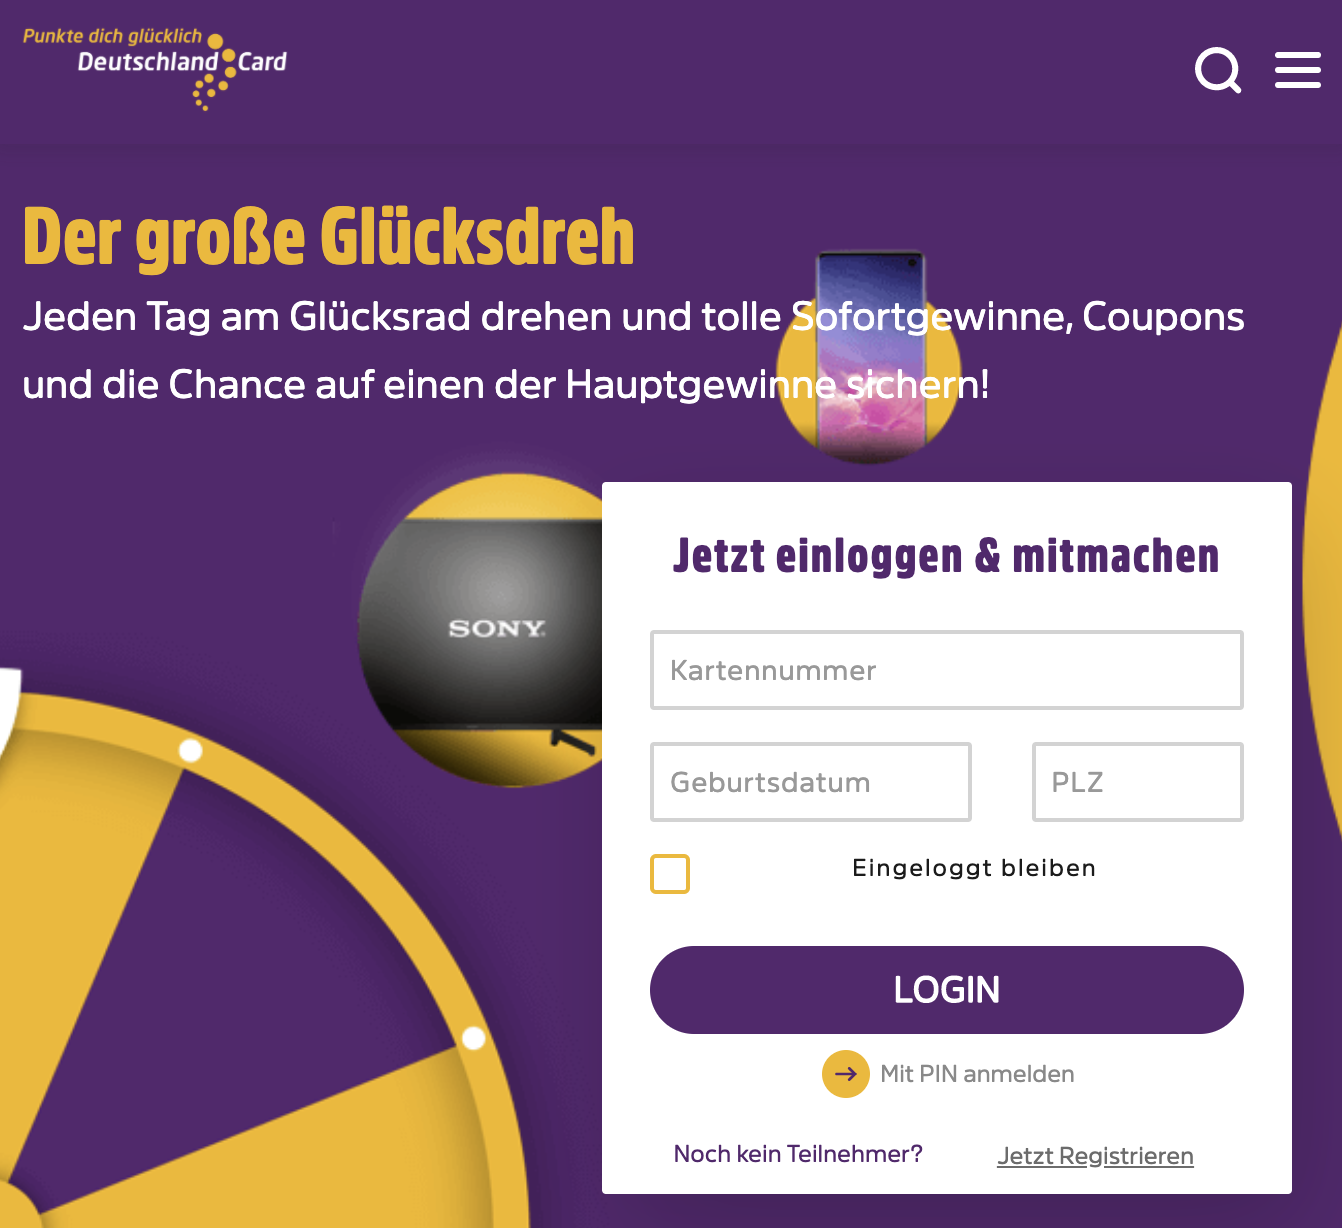 DeutschlandCard Gewinnspiel: Smart-TV oder Samsung S10 zu gewinnen